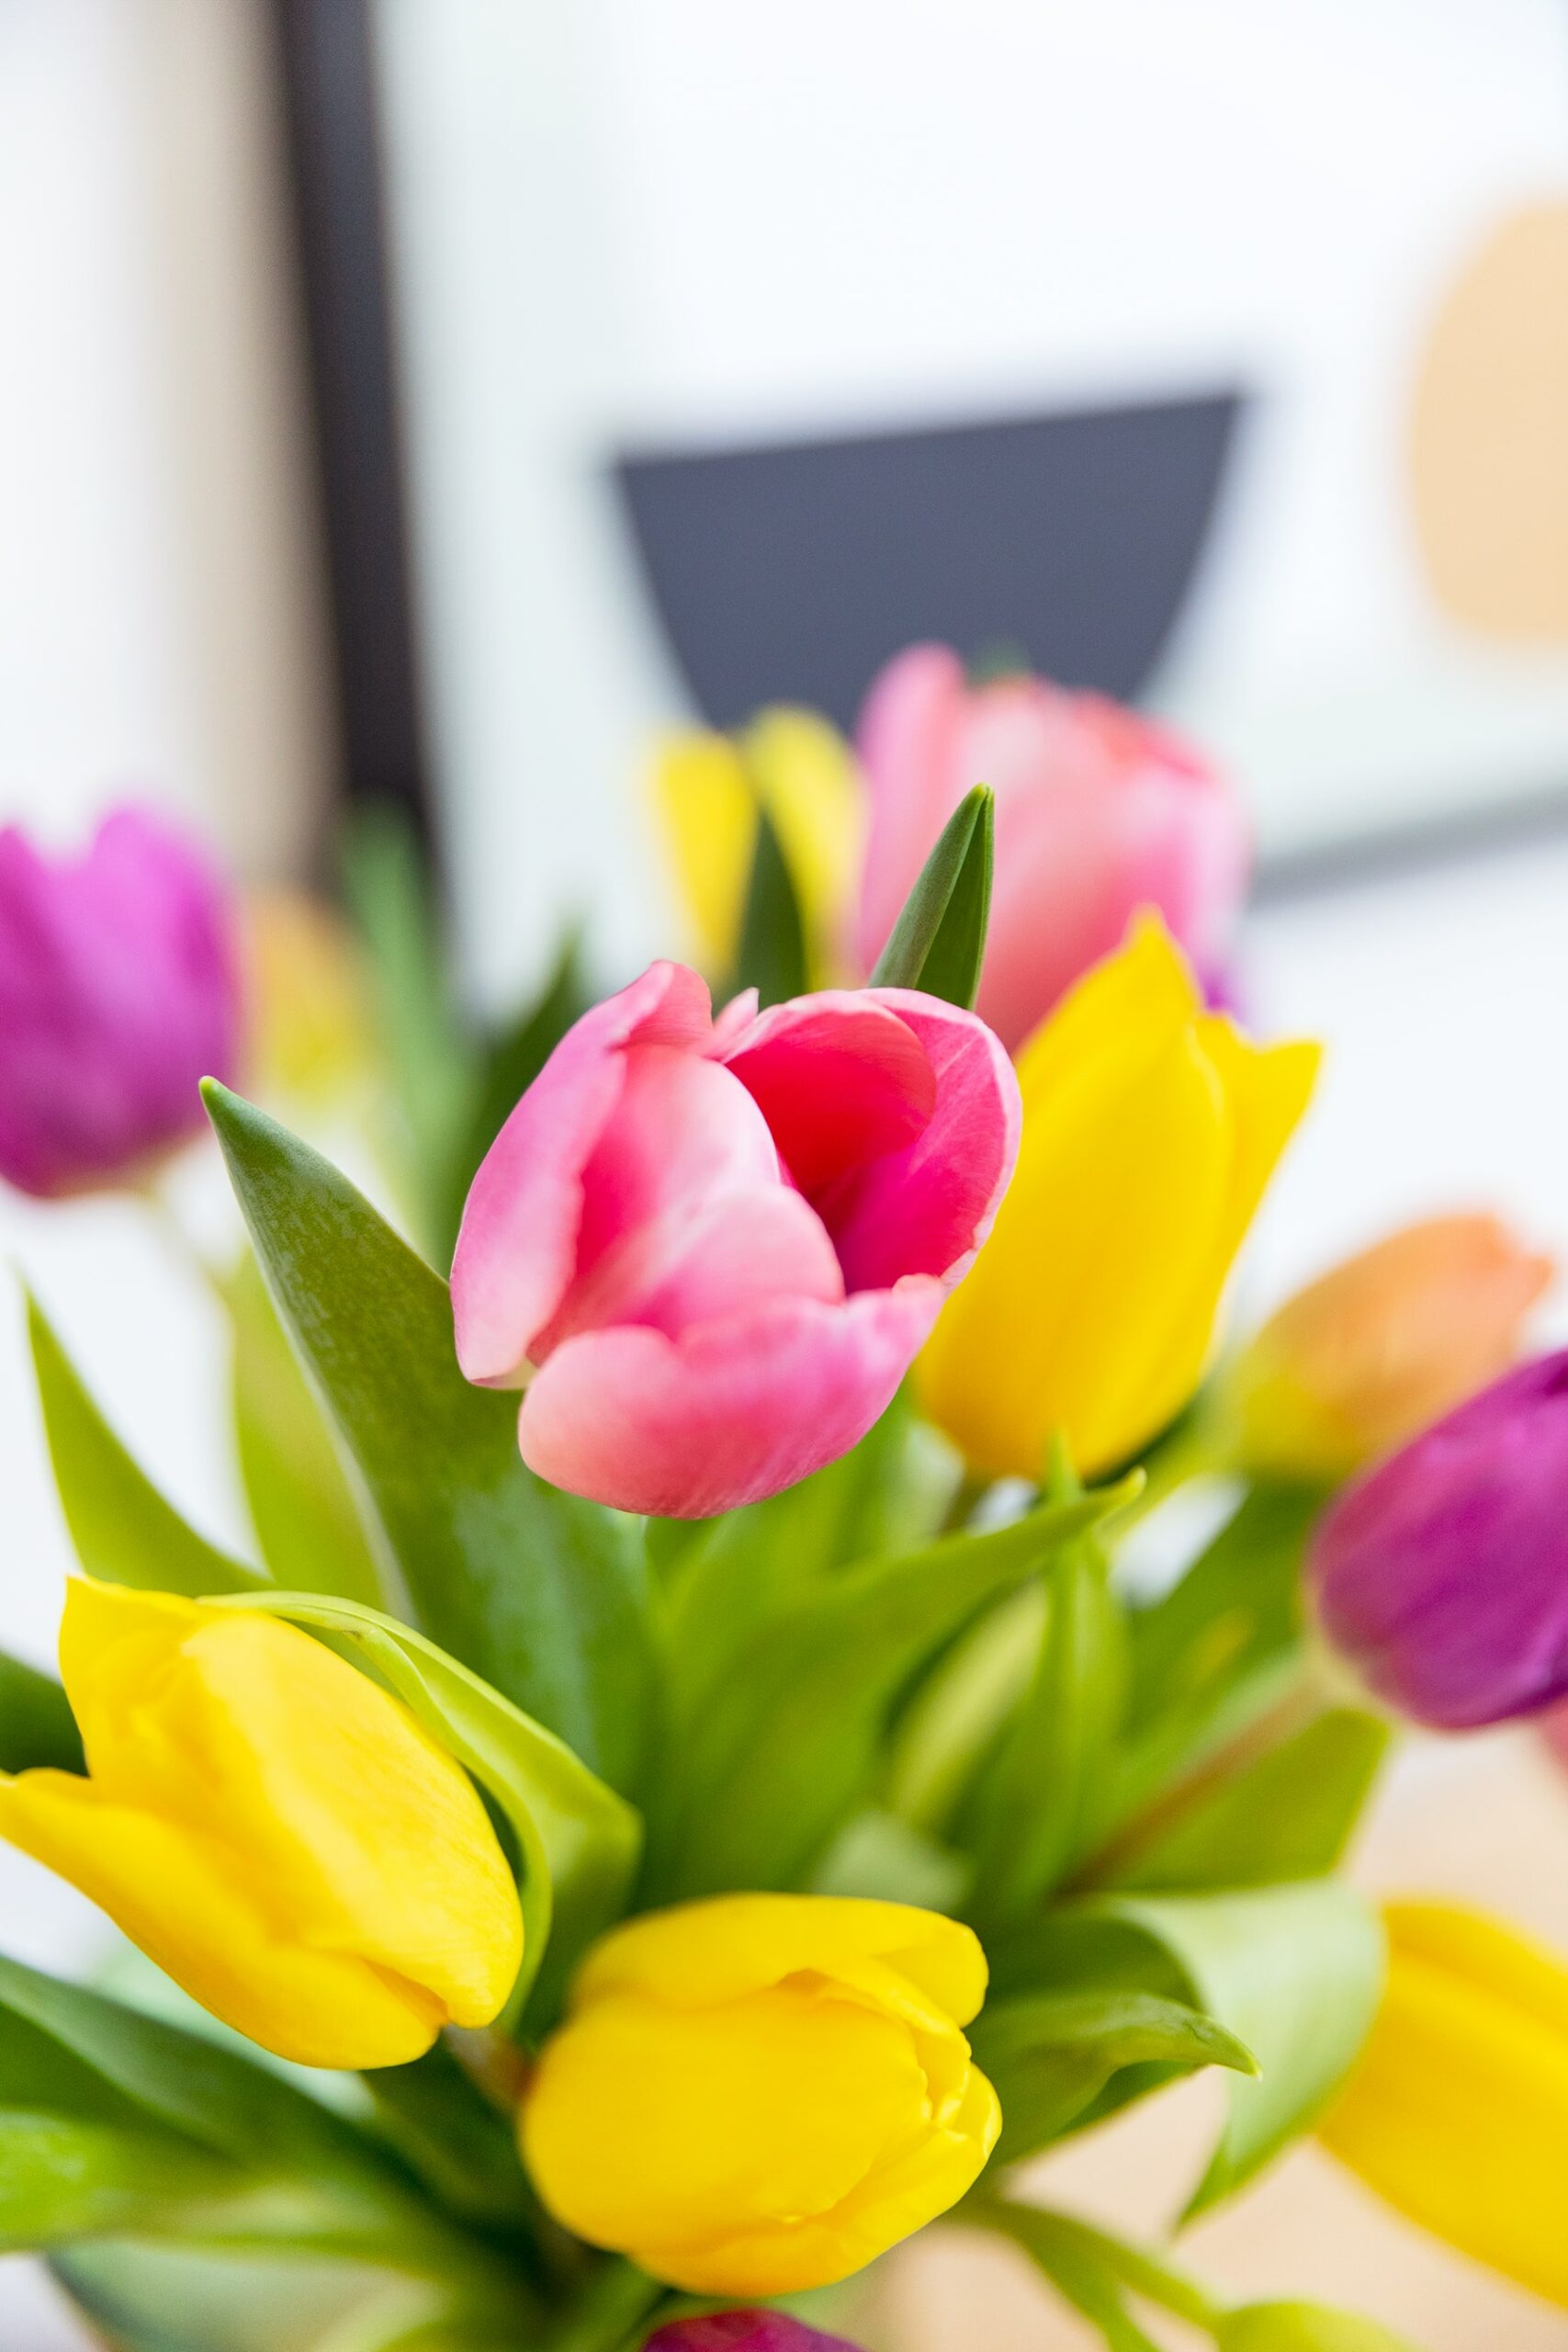 Significado de los tulipanes según su color | Colvin Blog